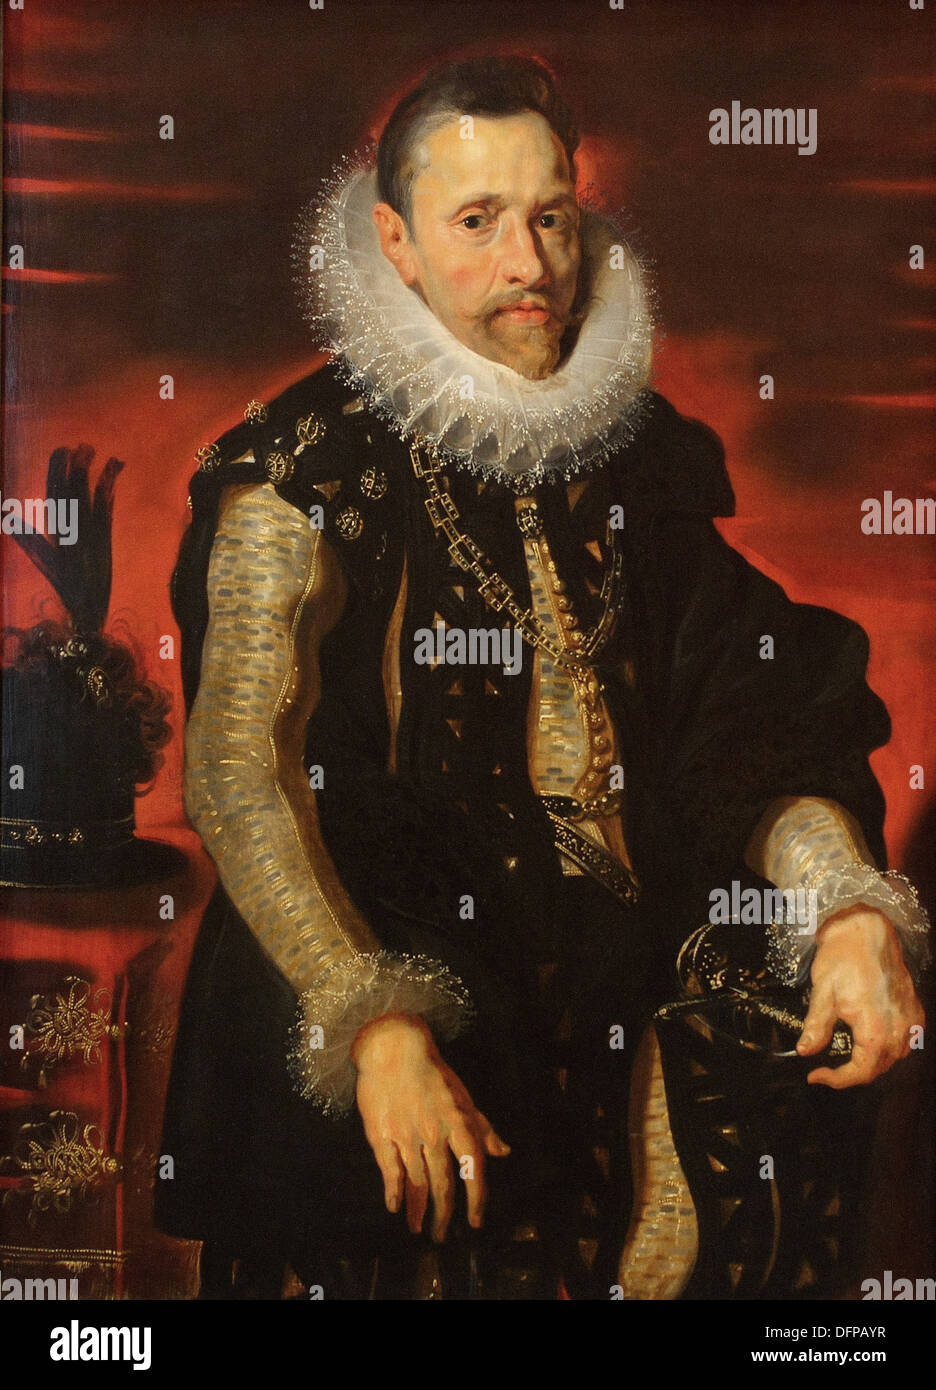 Peter Paul RUBENS - l'archiduc Albert VII - 1615 - Kunsthistoriches Museum - Vienne Banque D'Images